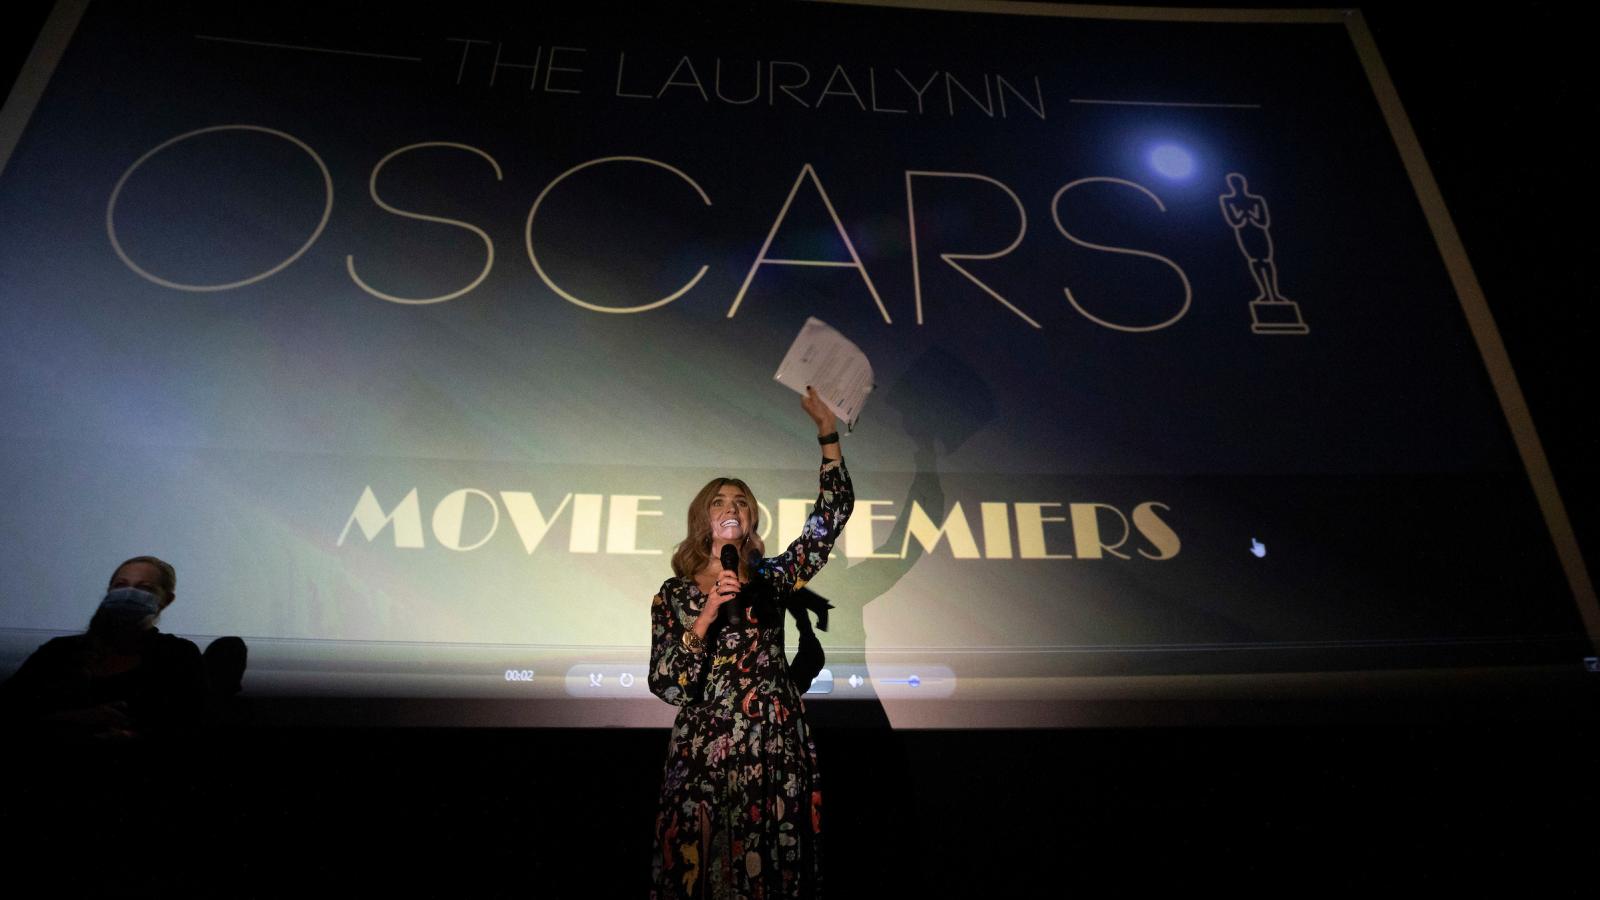 The LauraLynn Oscars 2021